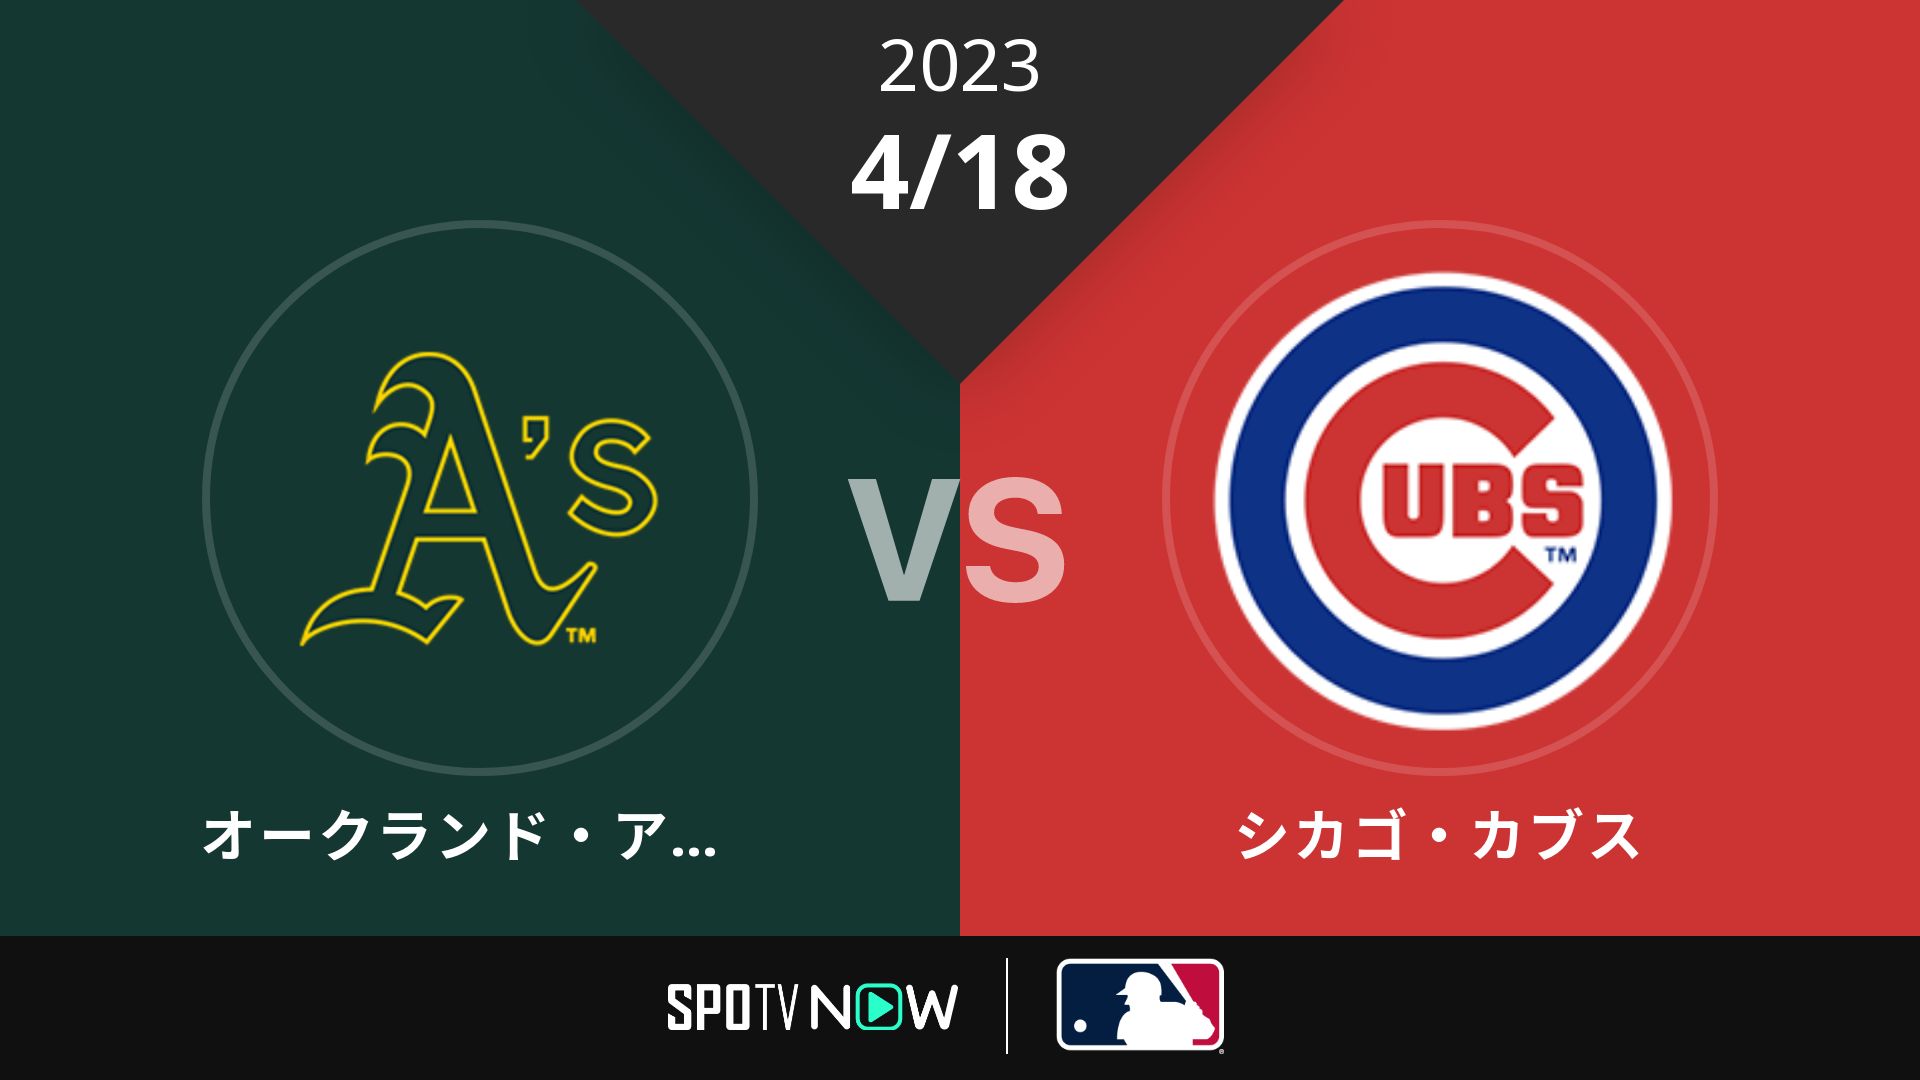 2023/4/18 アスレチックス vs カブス [MLB]